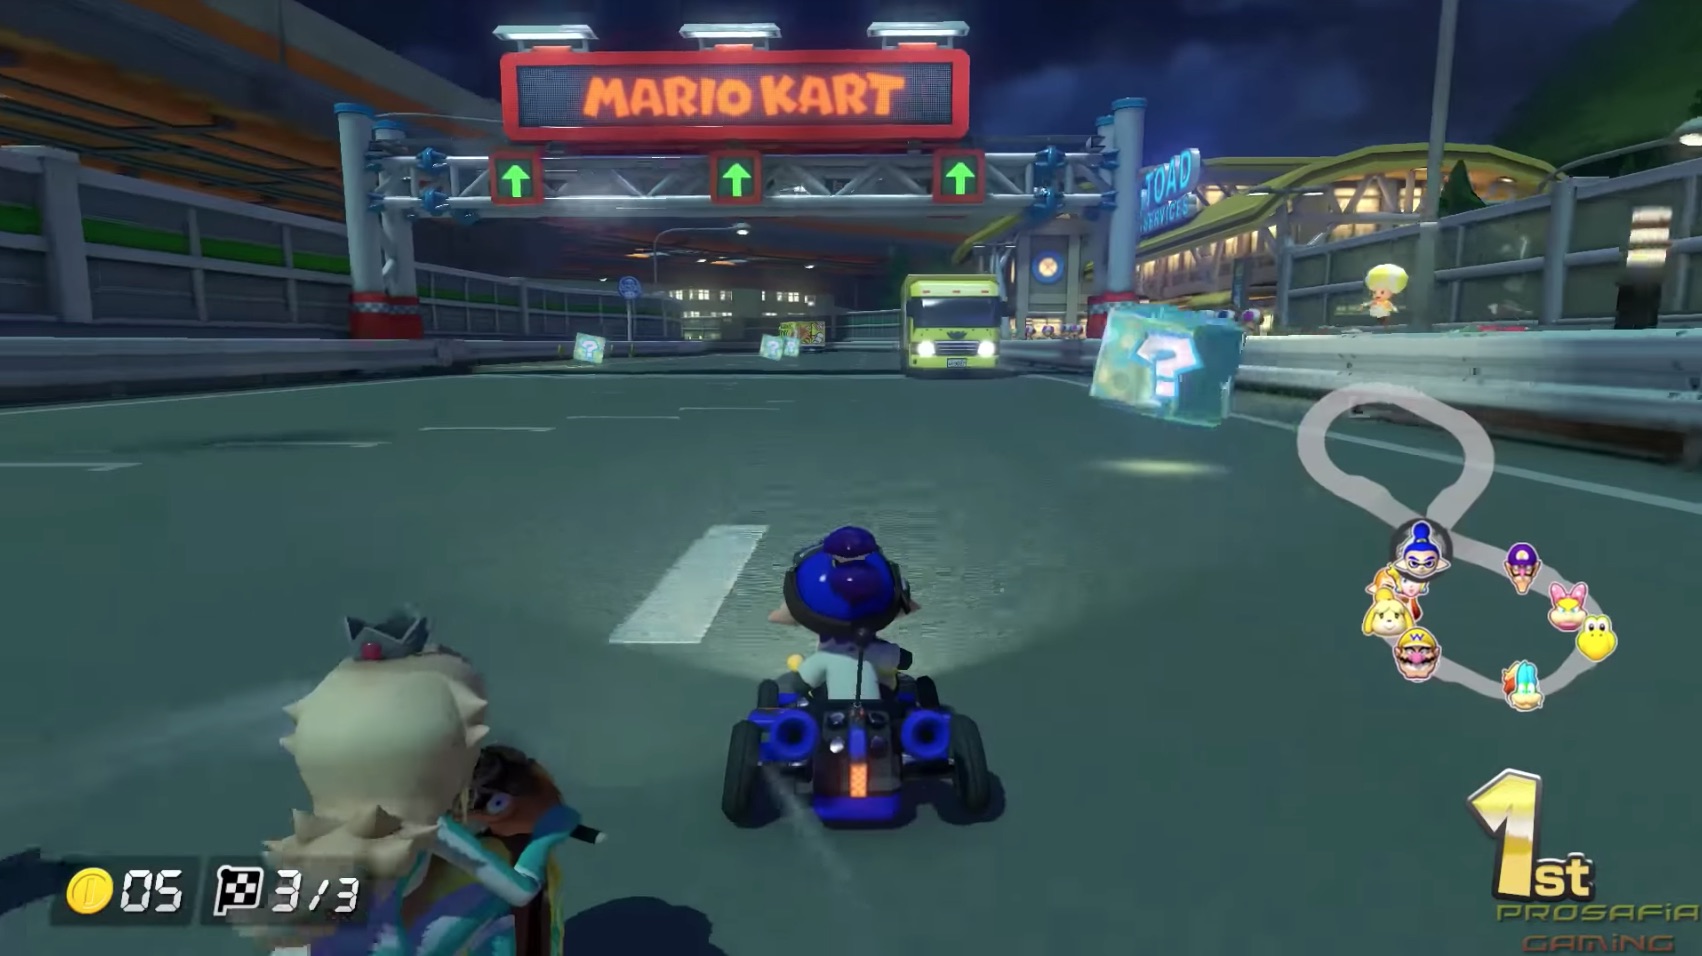 Mario Kart 8 Deluxe gameplay footage (2017)